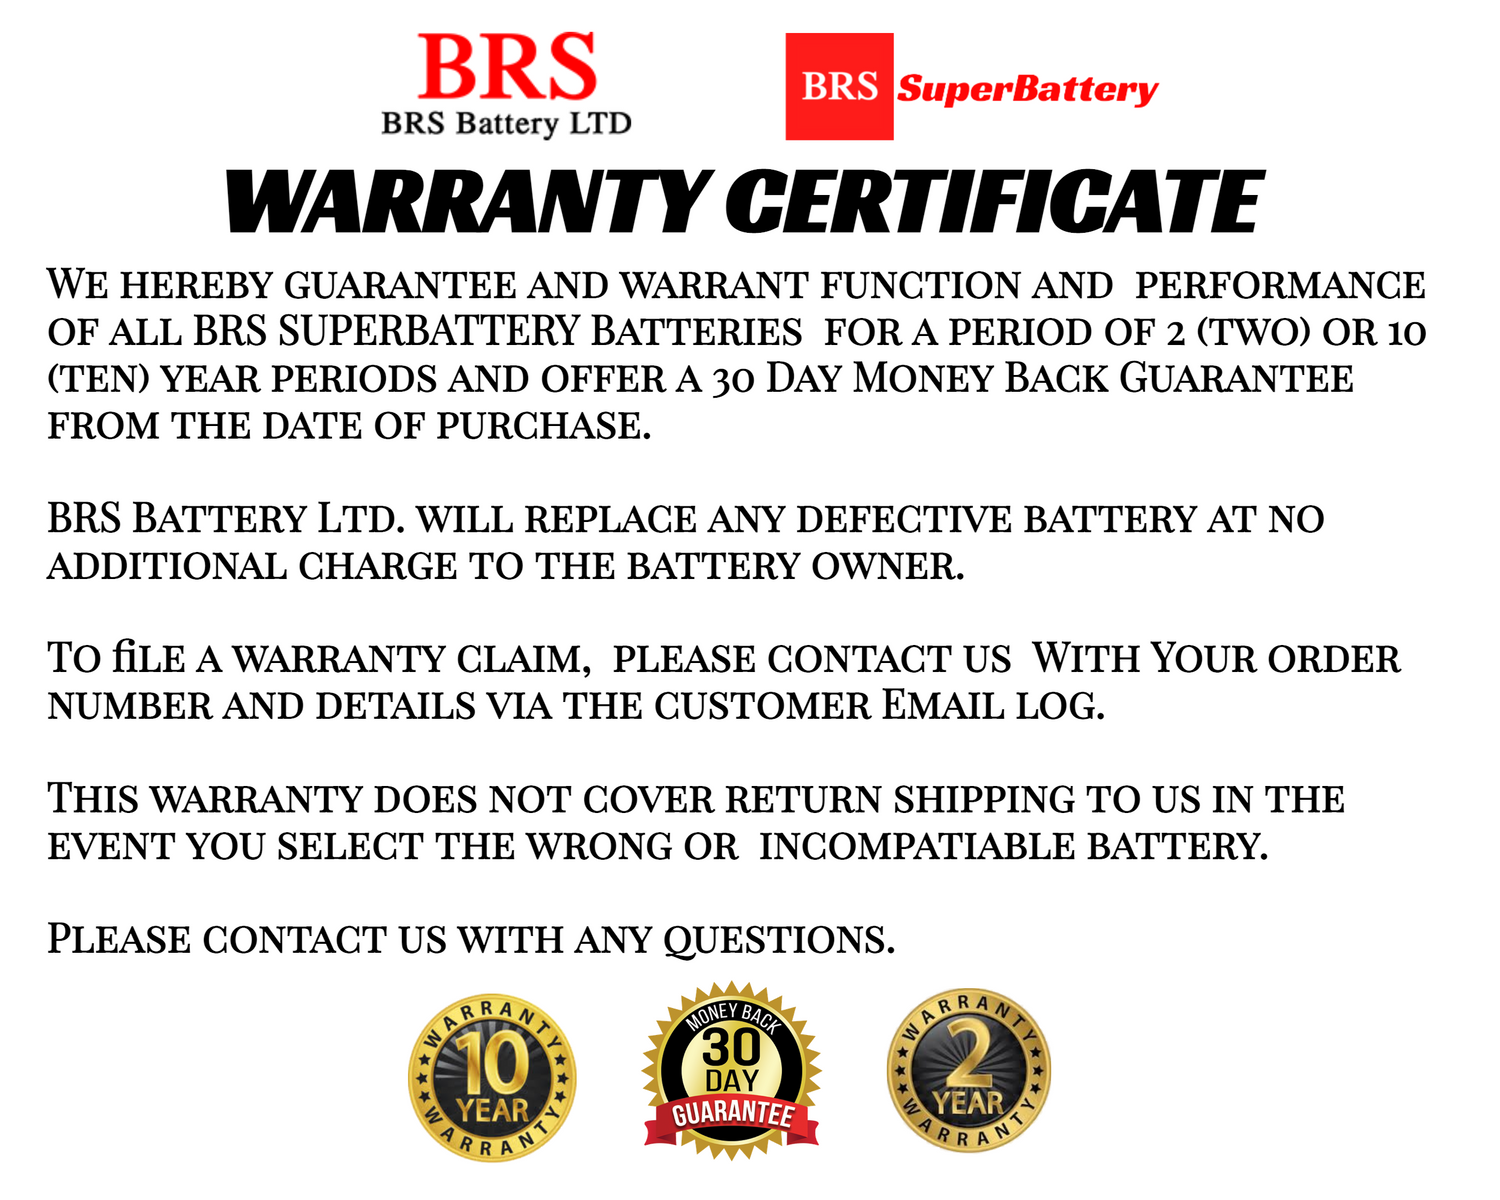 BRS5L-BS 12V 5AH 65CCA 30 Day Warranty - BRS Super Battery